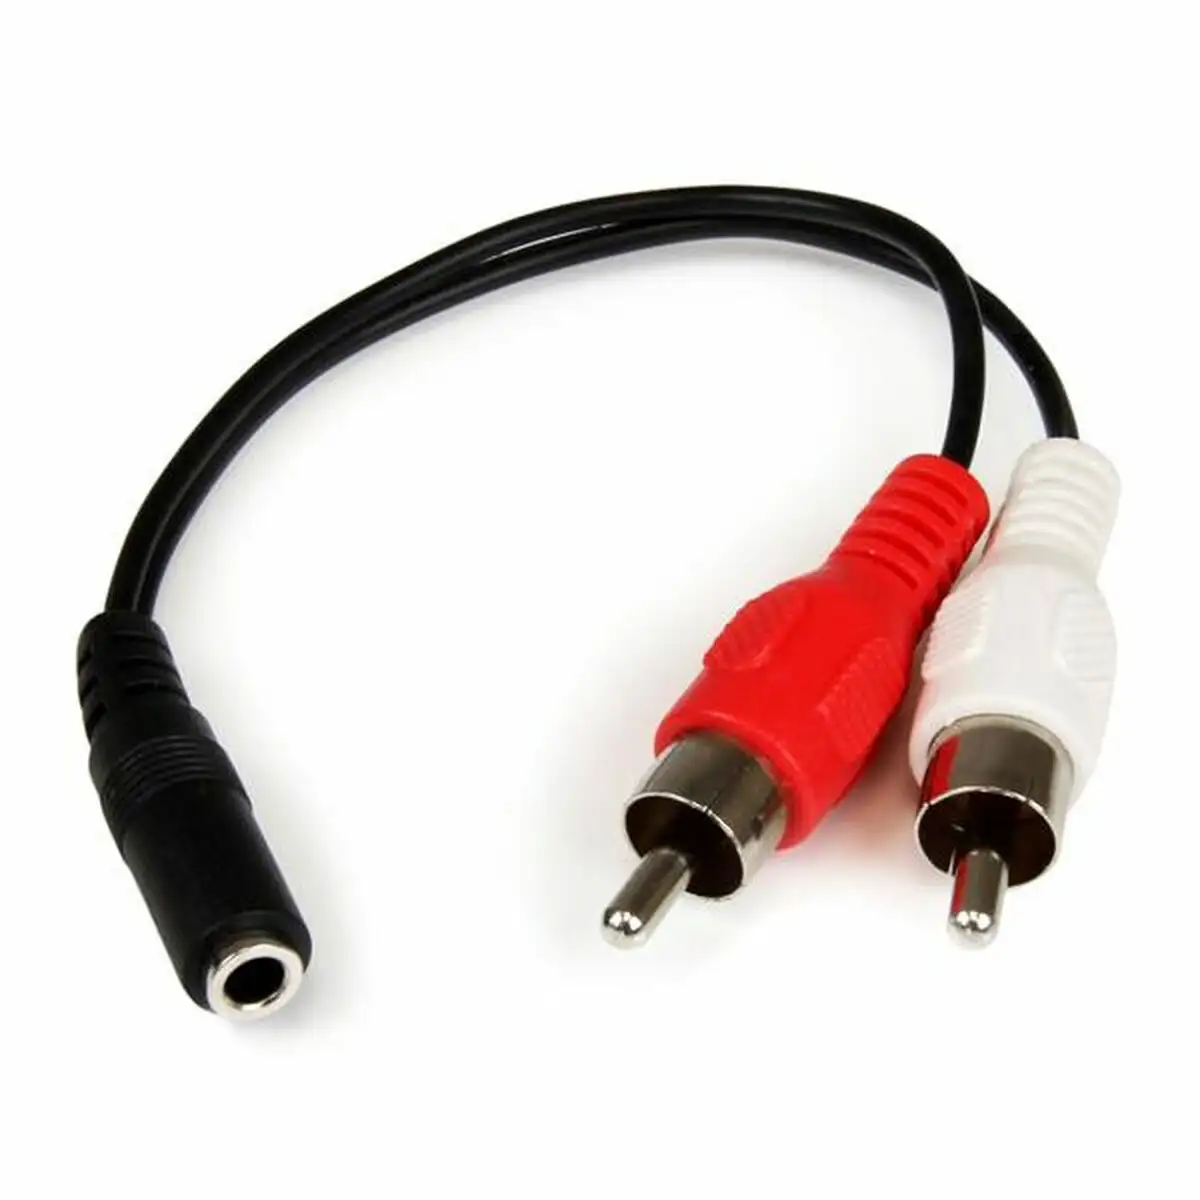 Cable audio jack 3 5 mm vers 2 rca startech mufmrca noir 0 15 m_8770. DIAYTAR SENEGAL - Votre Plateforme Shopping de Confiance. Naviguez à travers nos rayons et choisissez des produits fiables qui répondent à vos besoins quotidiens.